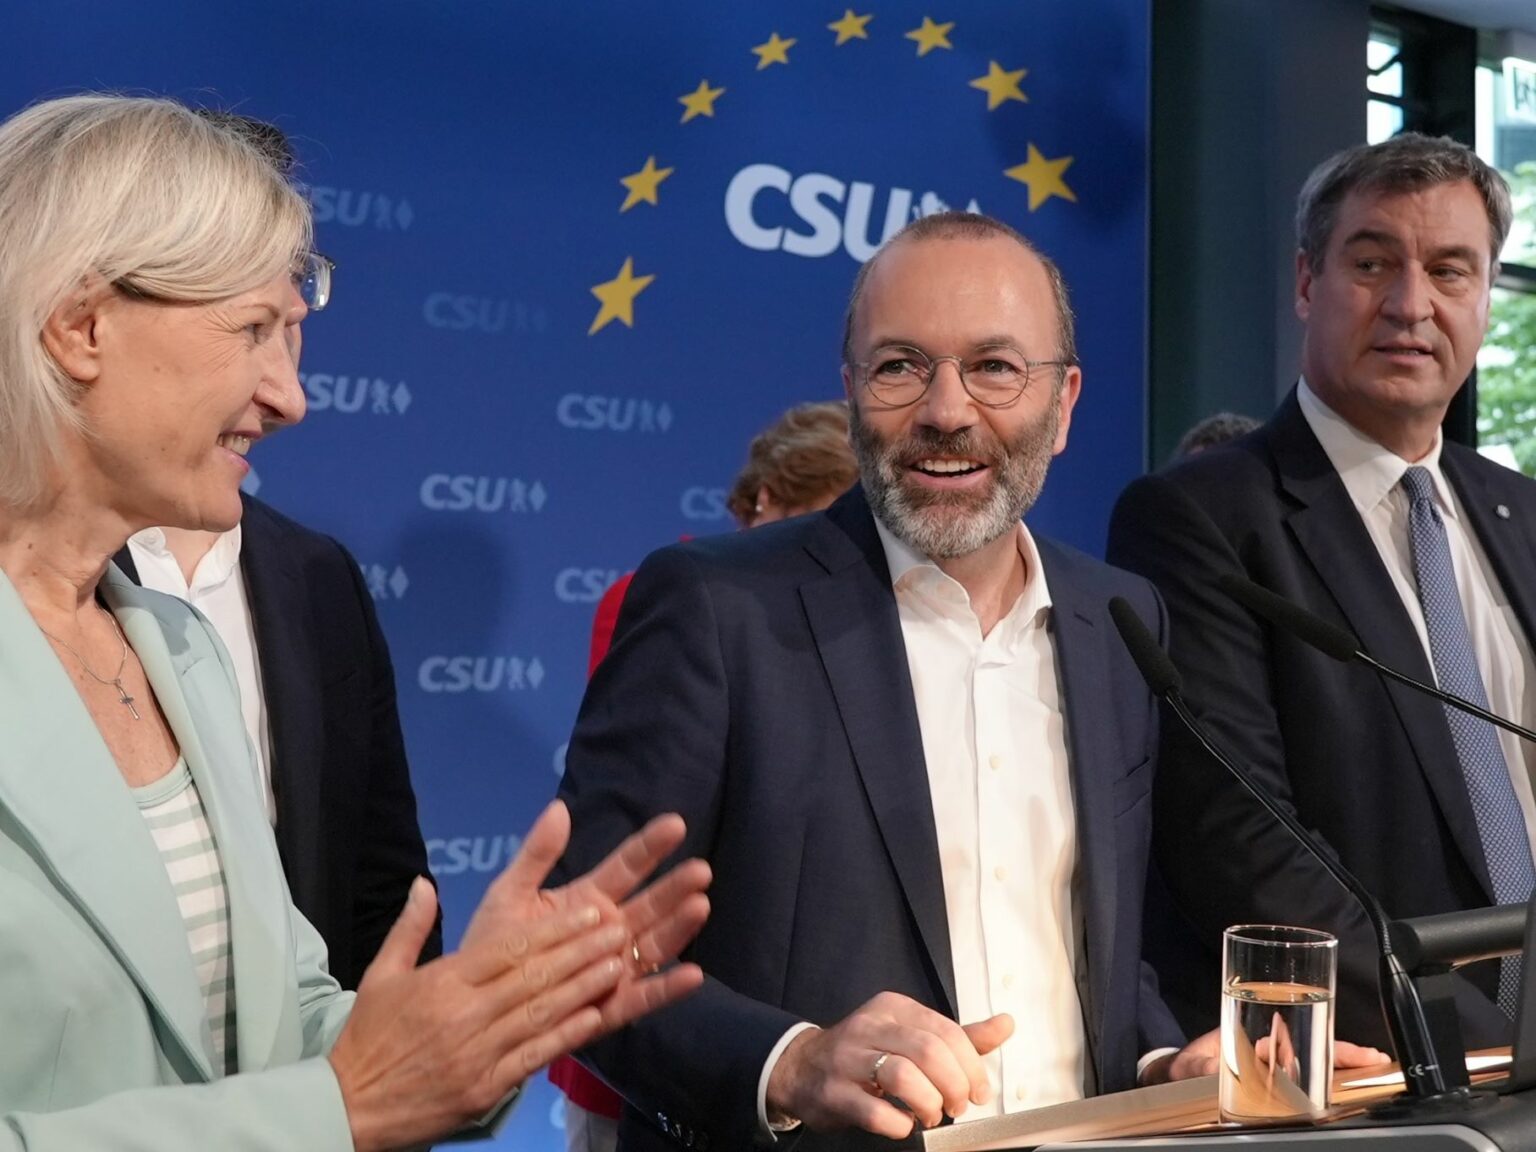 Europa hat gewählt. Wahlabend in der CSU Landesleitung.